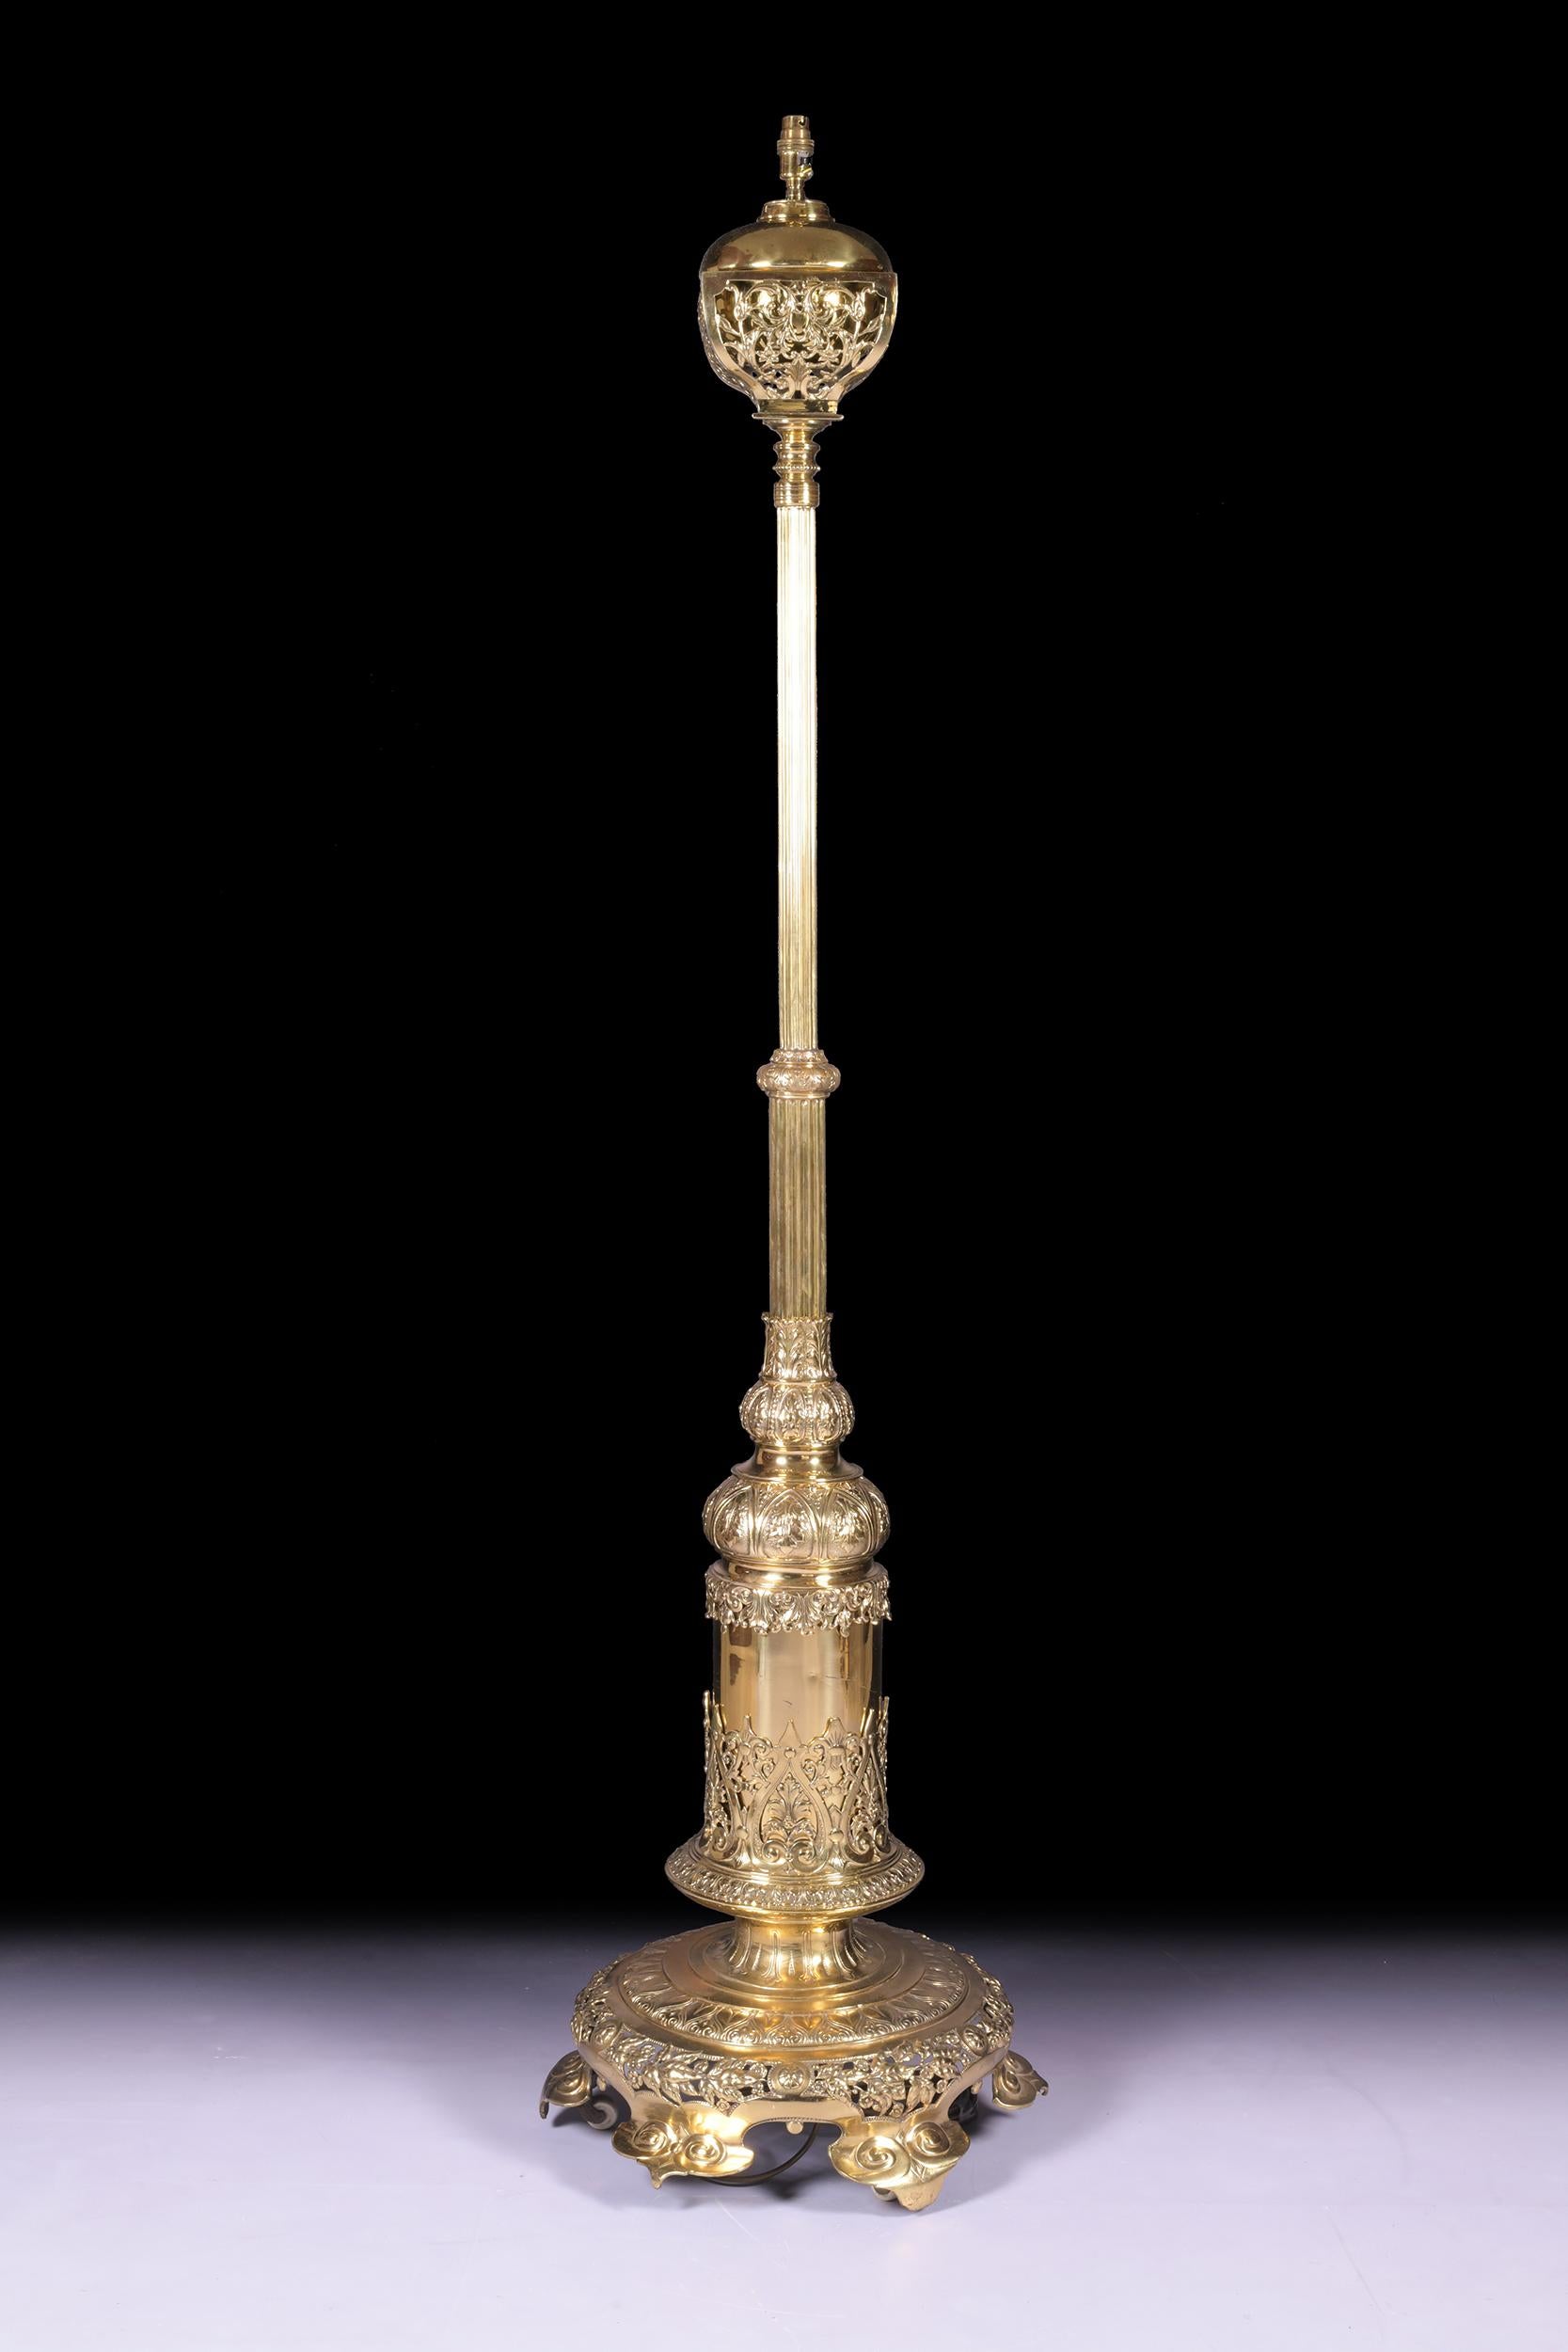 Standardlampe aus Messing von außergewöhnlicher Qualität aus dem 19. Jahrhundert. Diese äußerst attraktive viktorianische Stehleuchte aus Messing in Ausstellungsqualität ist jetzt in eine elektrische Stehleuchte umgewandelt.
Die Lampe besteht aus